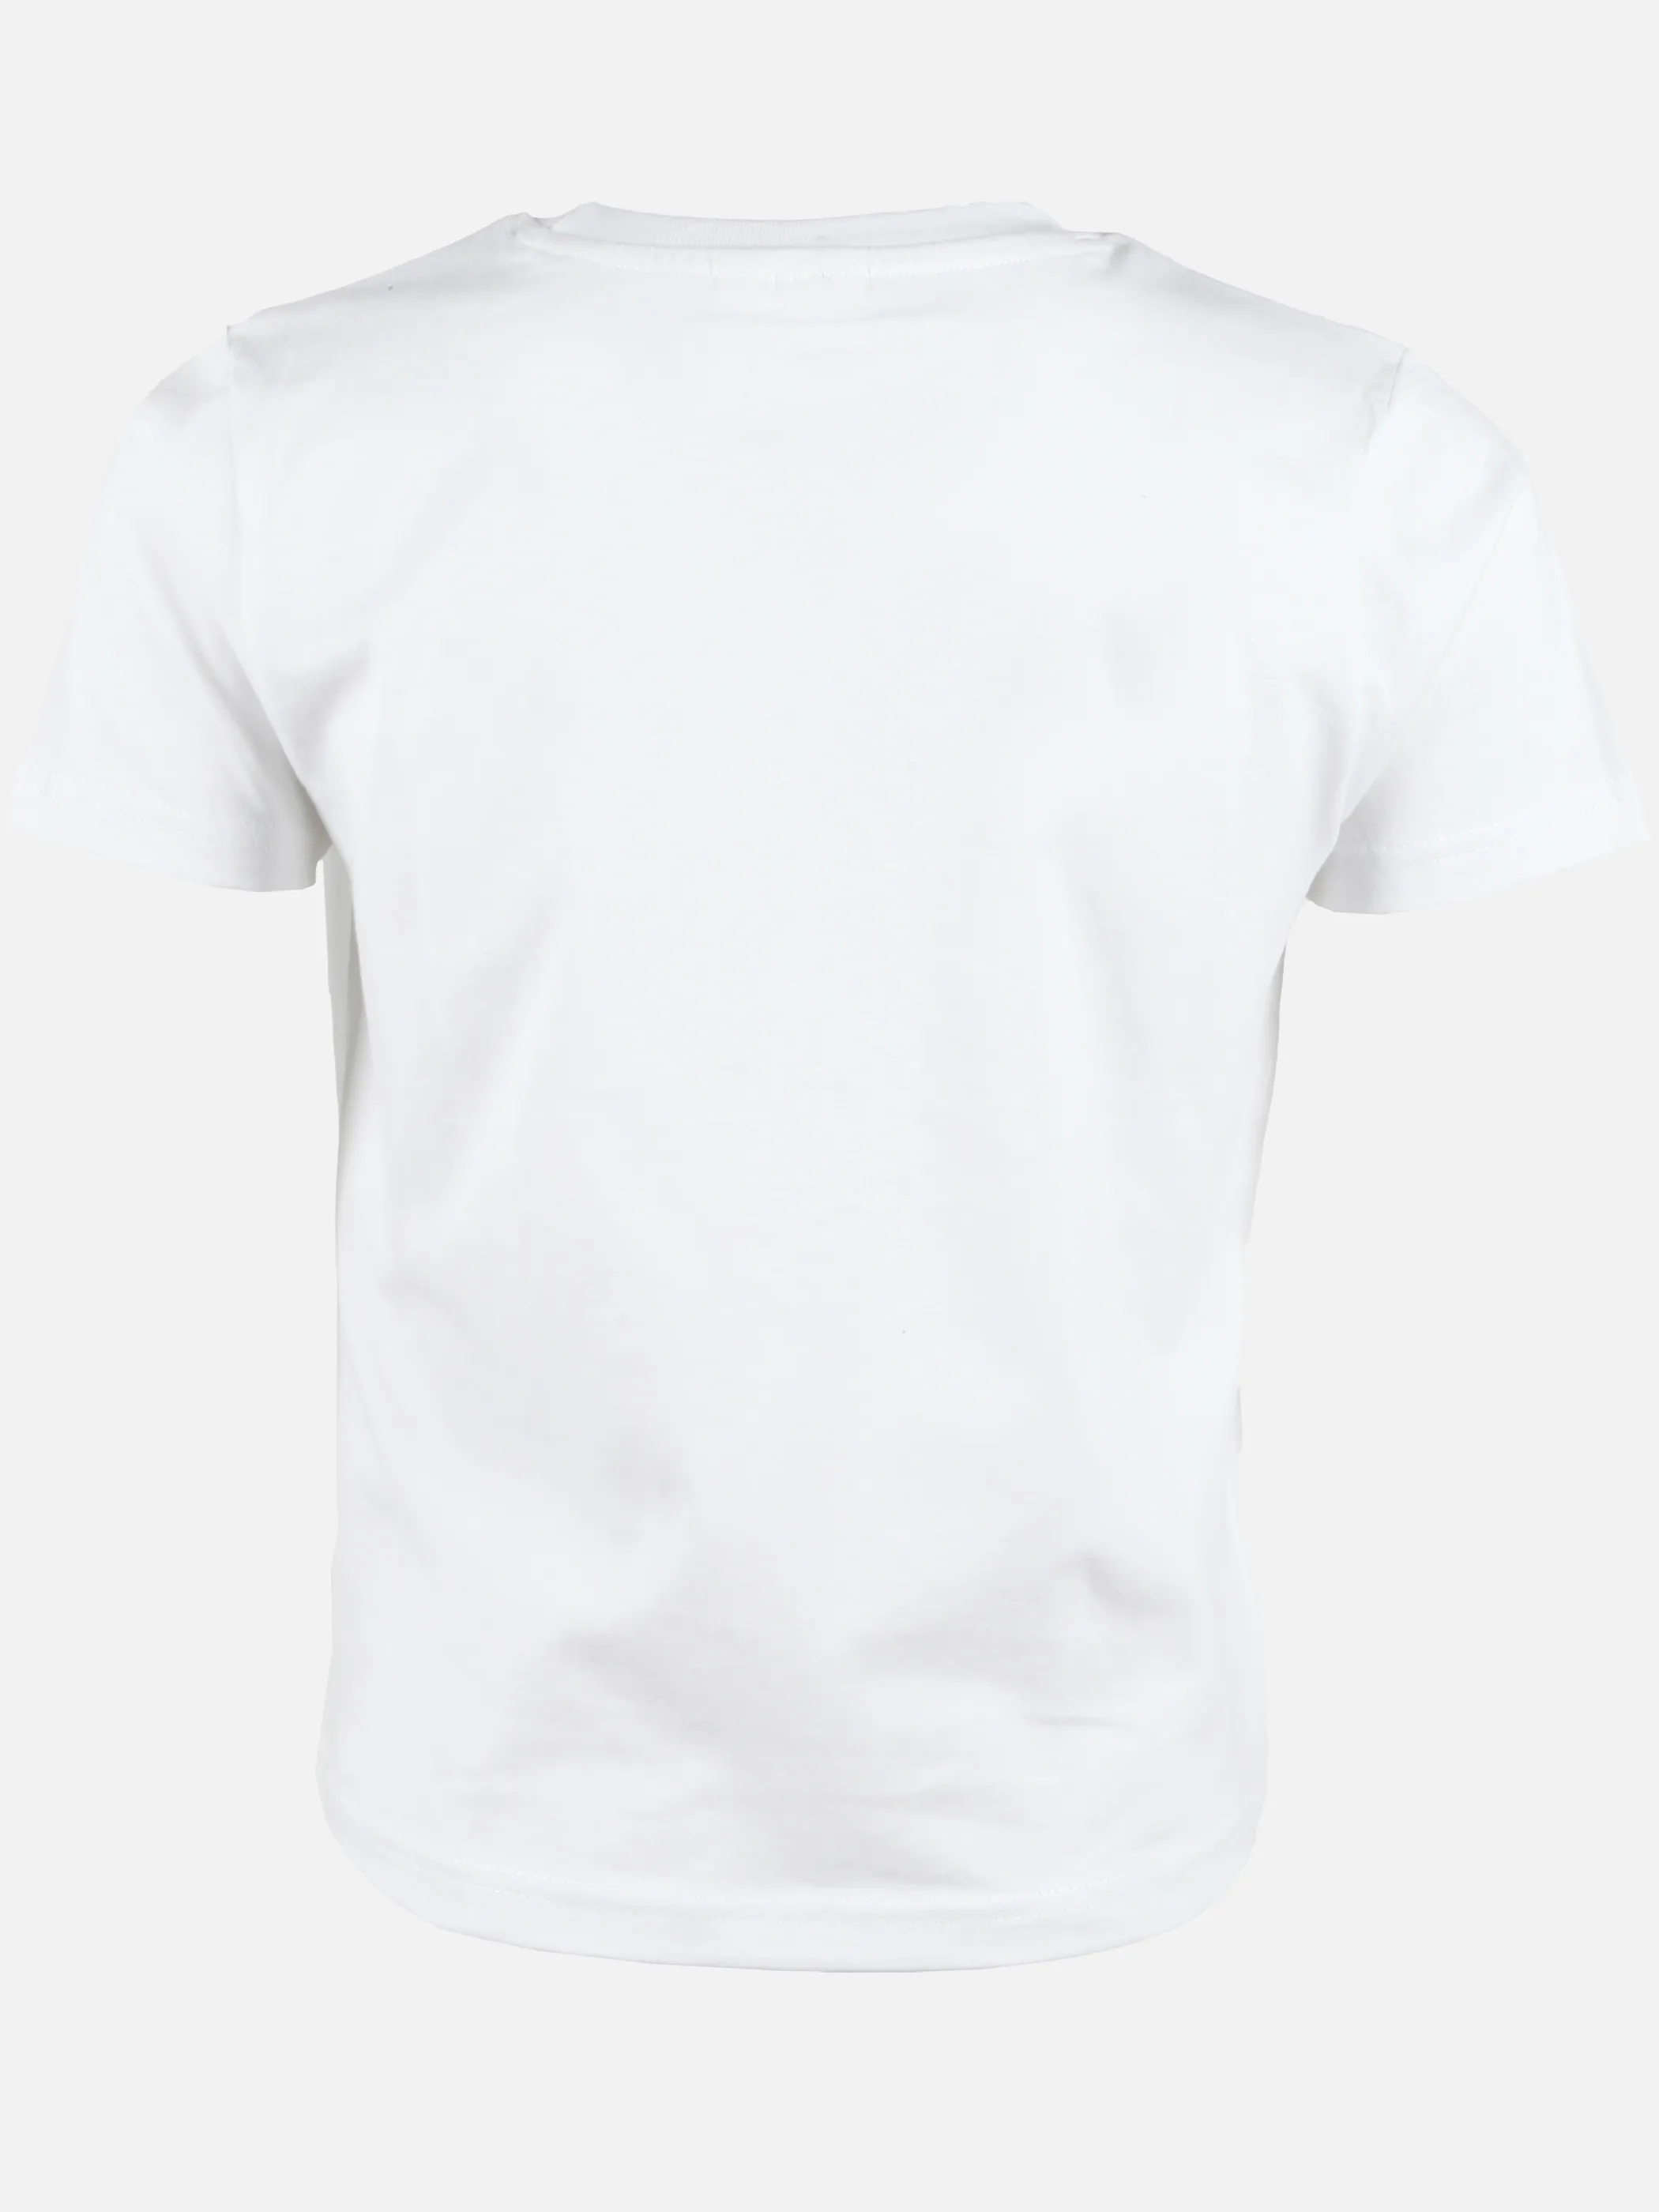 Sonic KJ T-Shirt mit großem Sonic Frontdruck in weiß Weiß 892446 WEIß 2